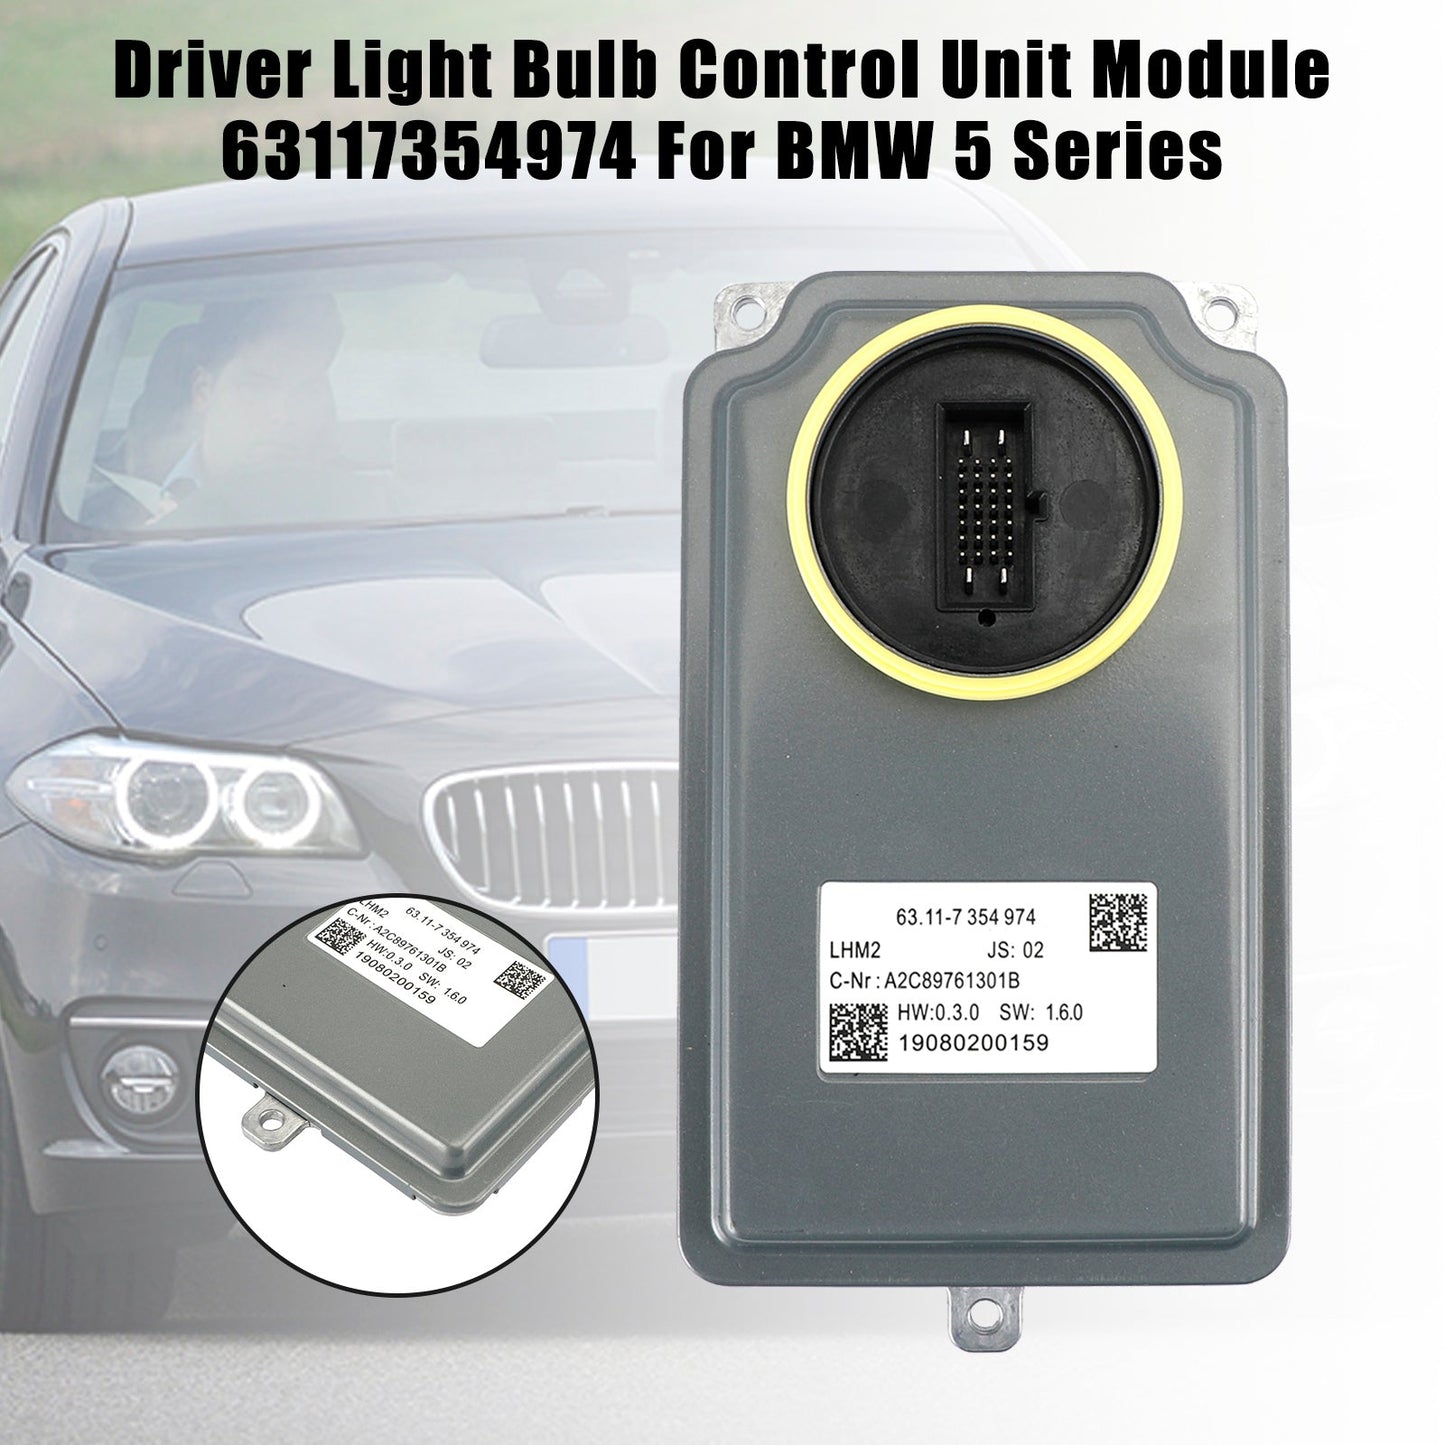 63117354974 BMW 5 Serie Driver Light Bulb Control Unit Module